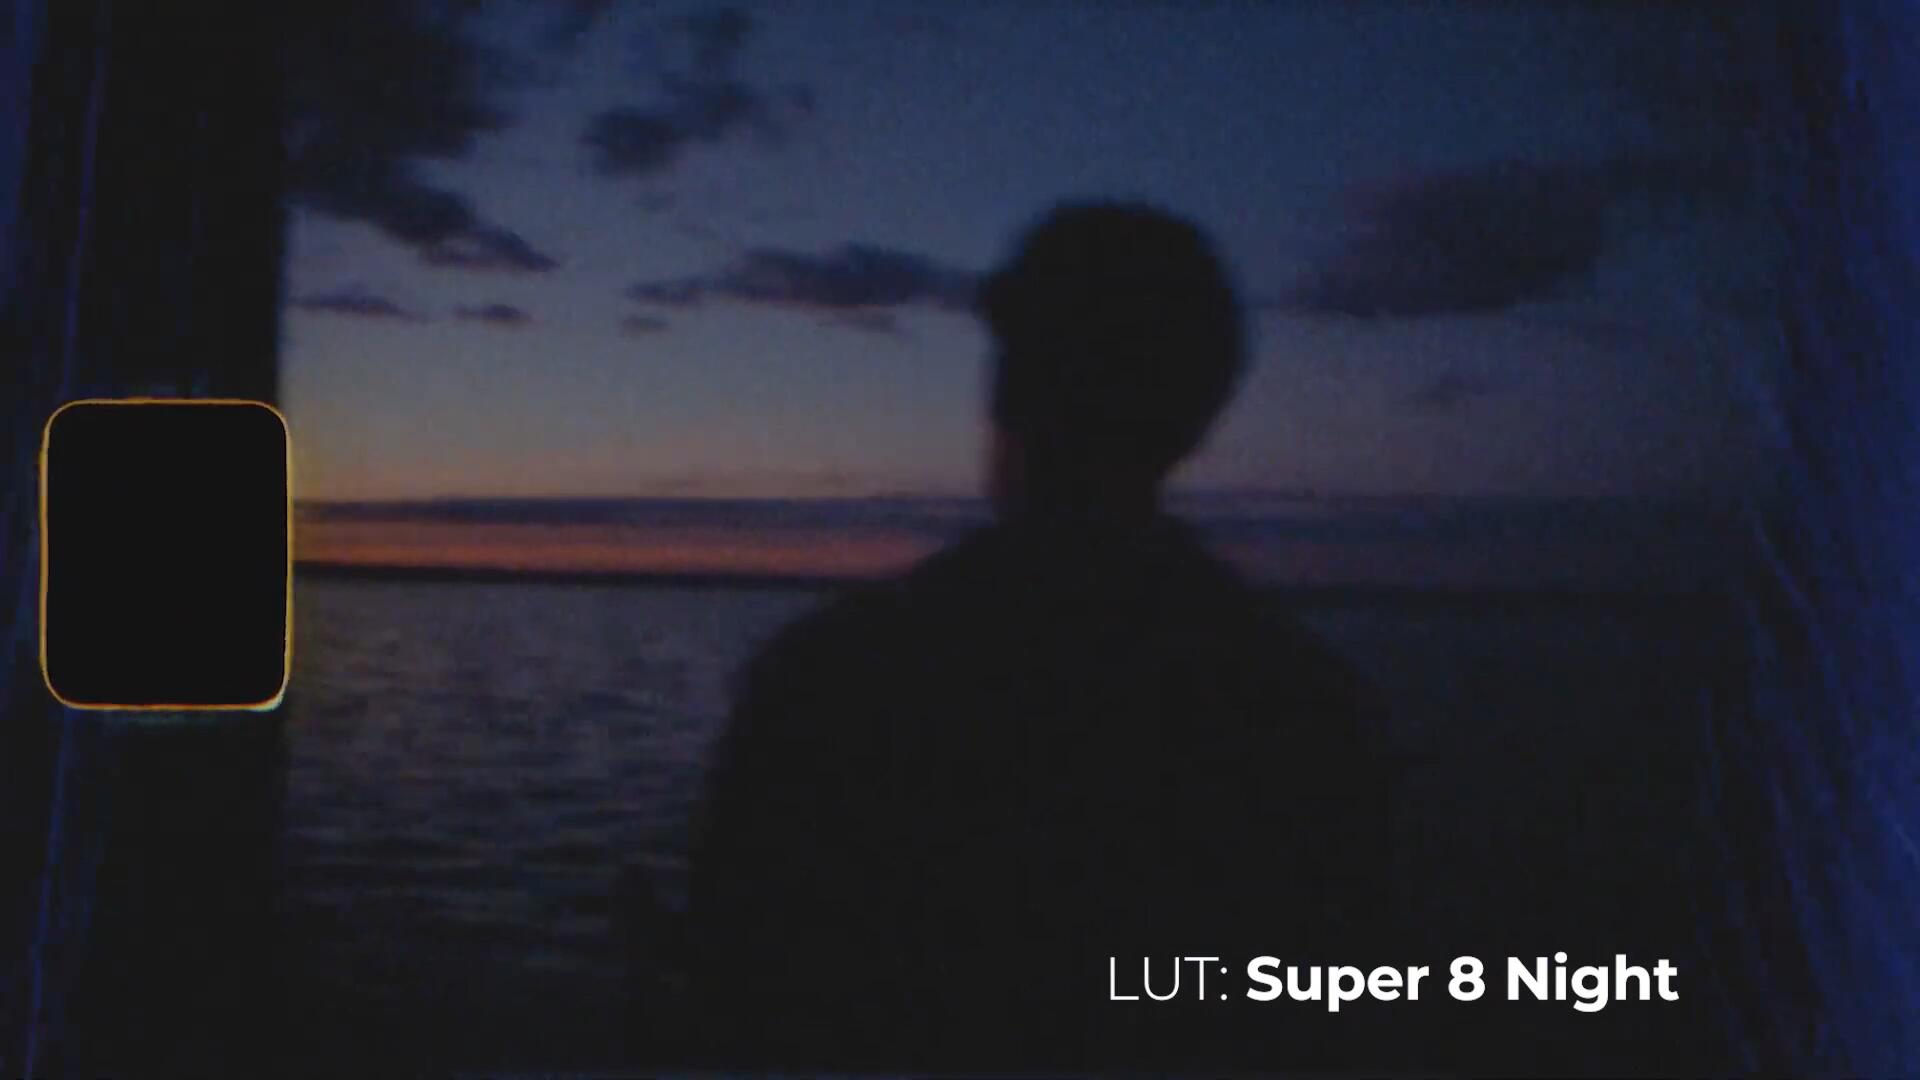 复古柯达Super 8情绪电影胶片感色彩日光夜景LUT调色预设包 , 第5张